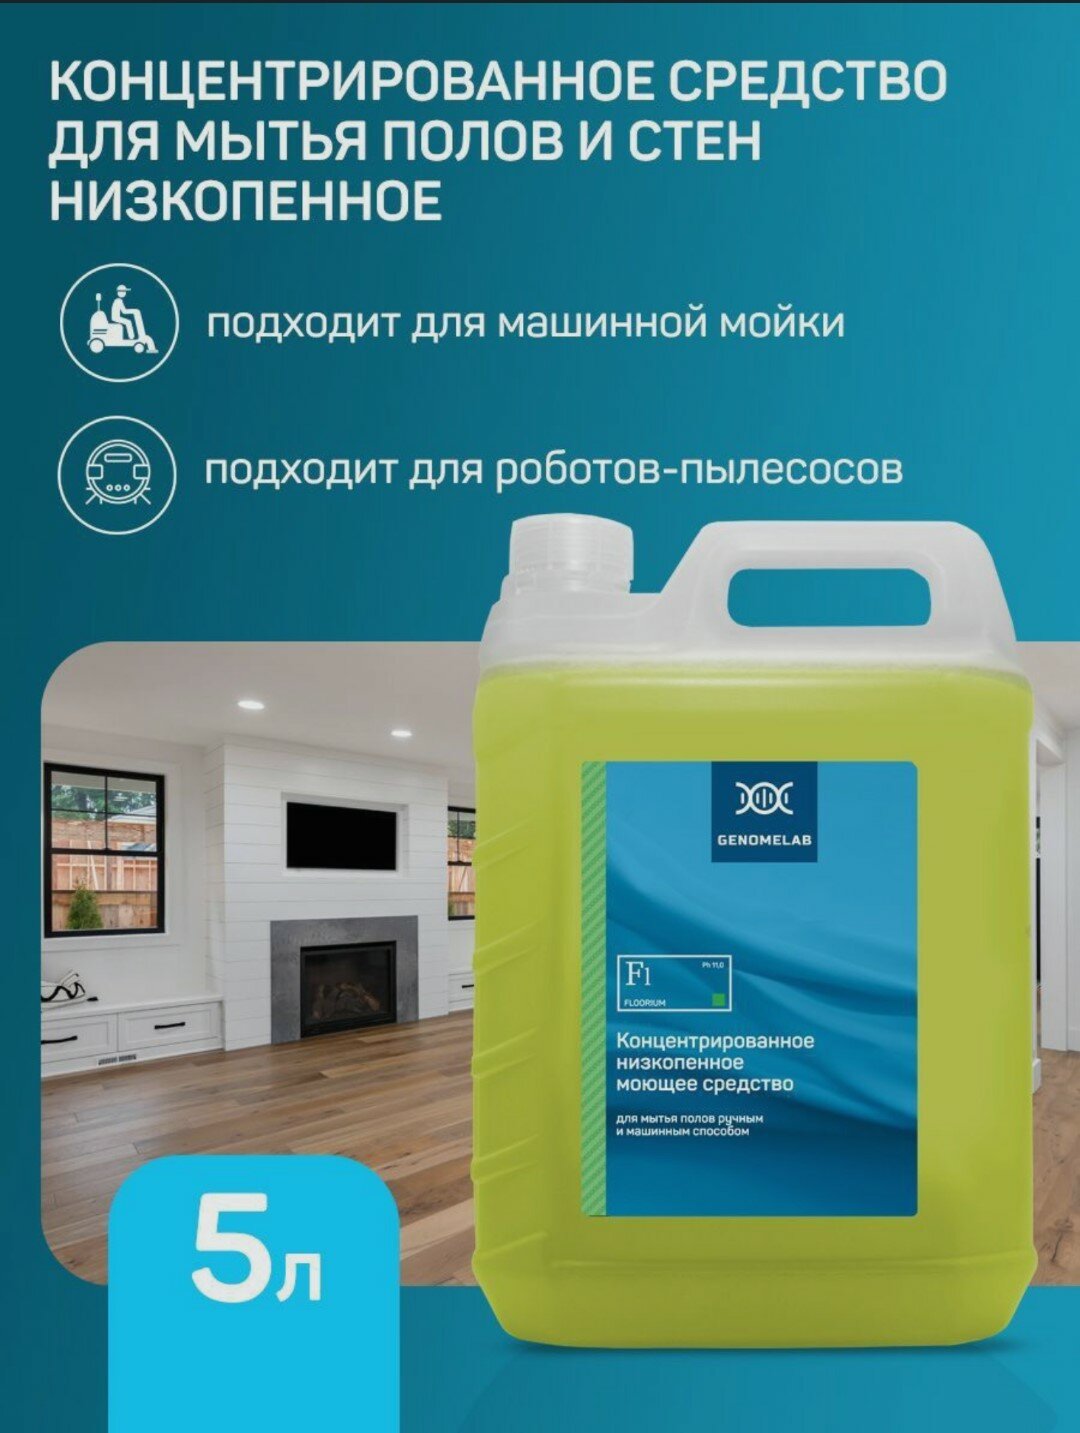 Моющее средство для полов и стен Floorium низкопенное концентрированное для уборки дома 1 литр